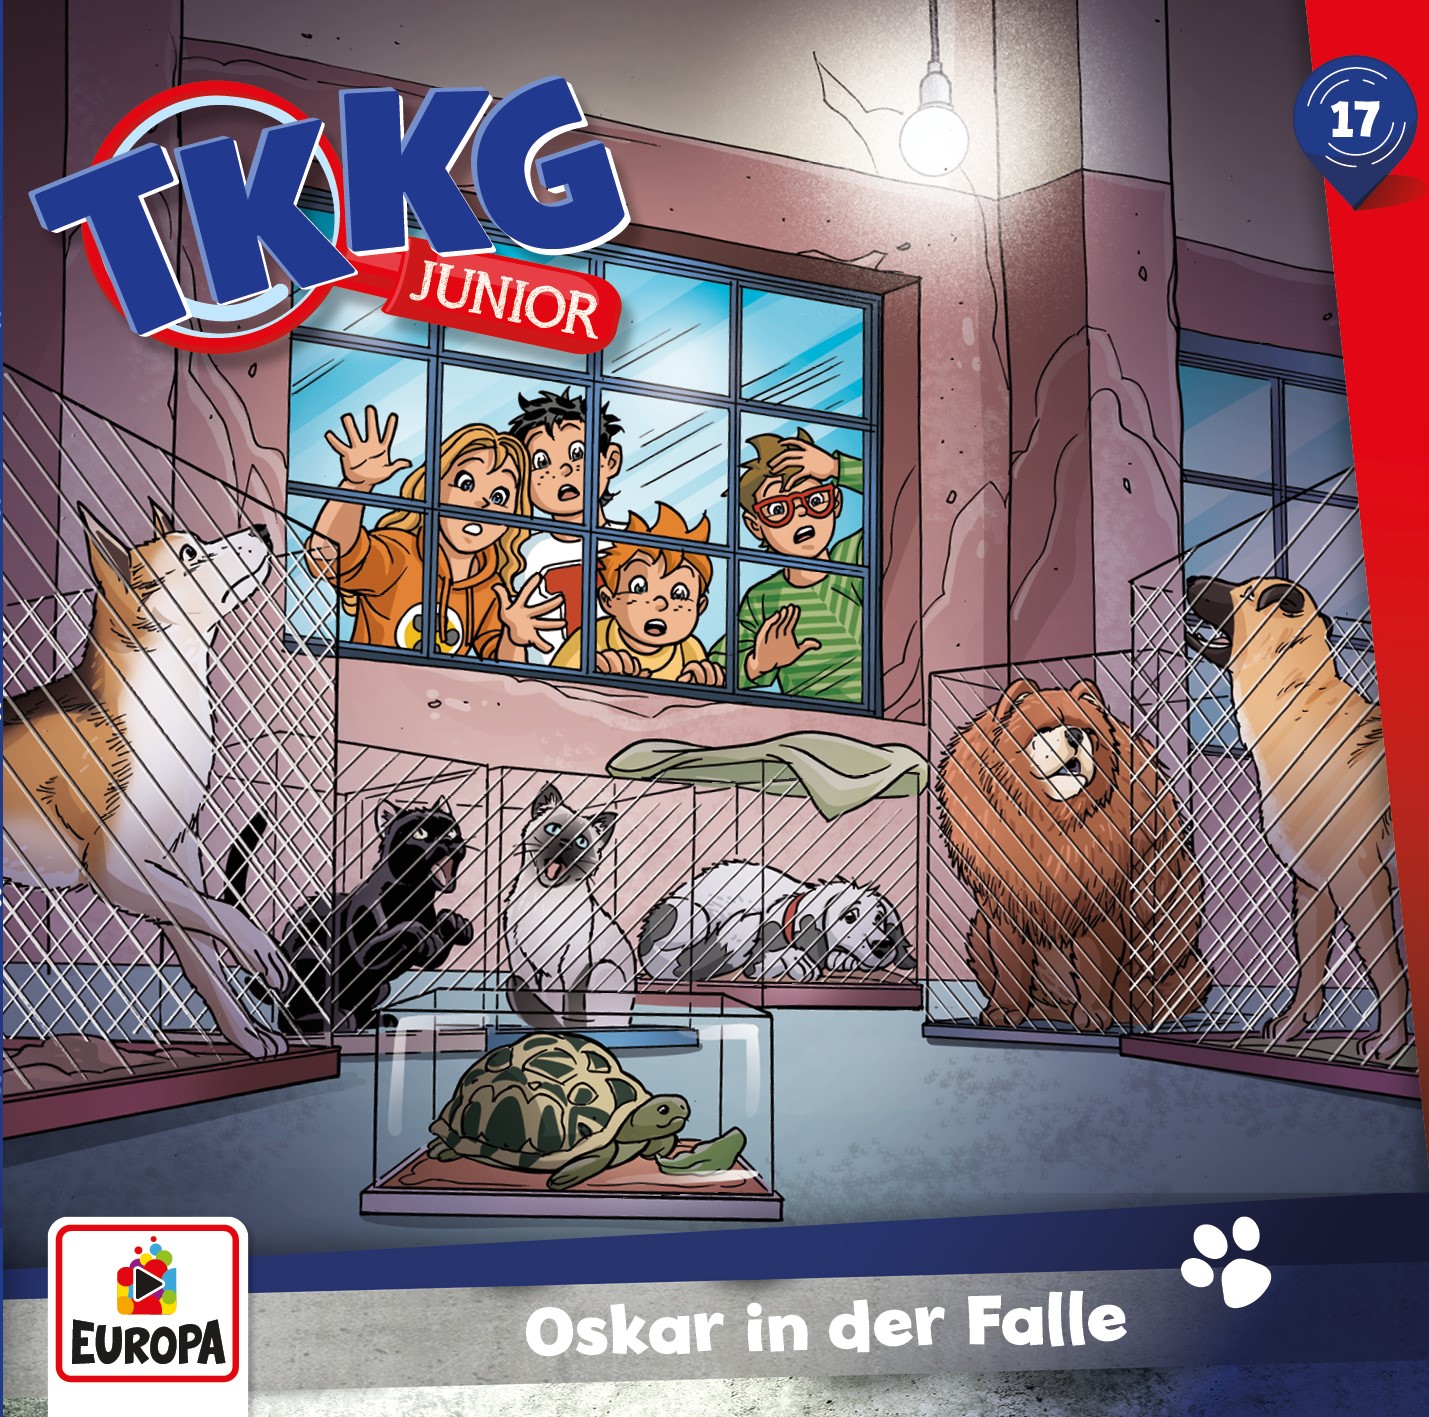 TKKG Junior Hörspiel-Folge 17: Oskar in der Falle